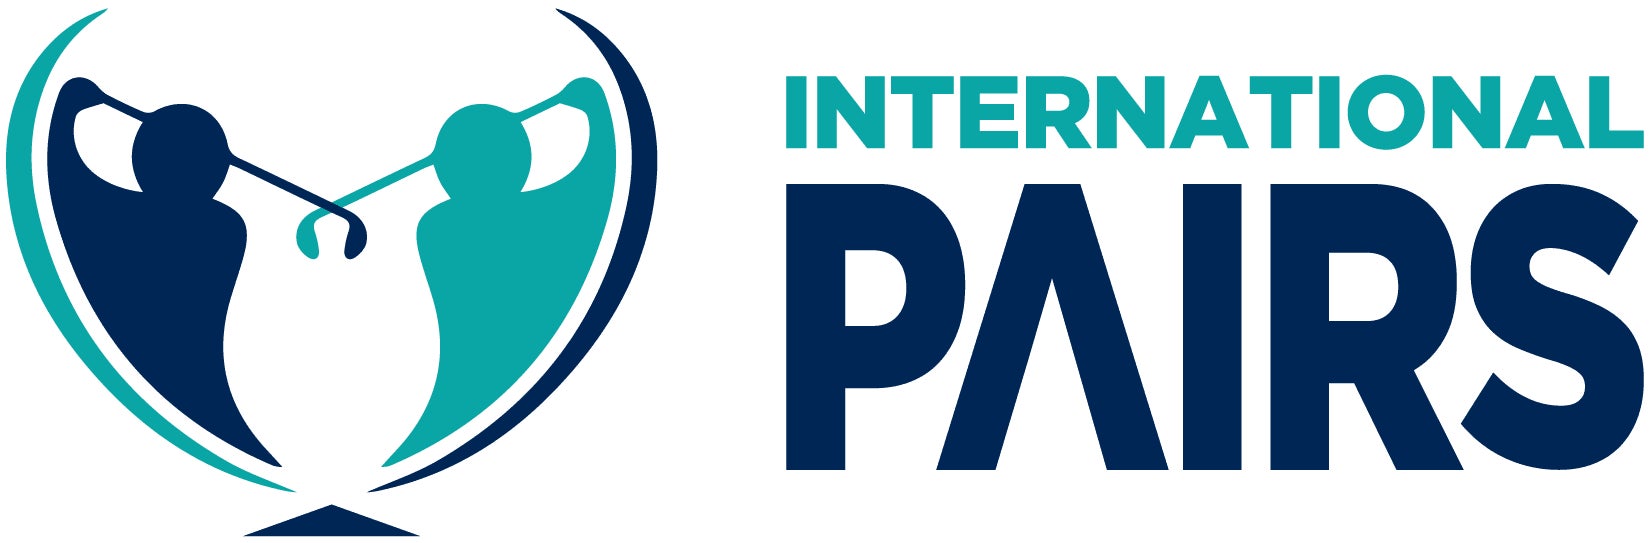 世界27カ国が参加する世界規模のゴルフのダブルス戦「International Pairs Golf」の日本大会を開催